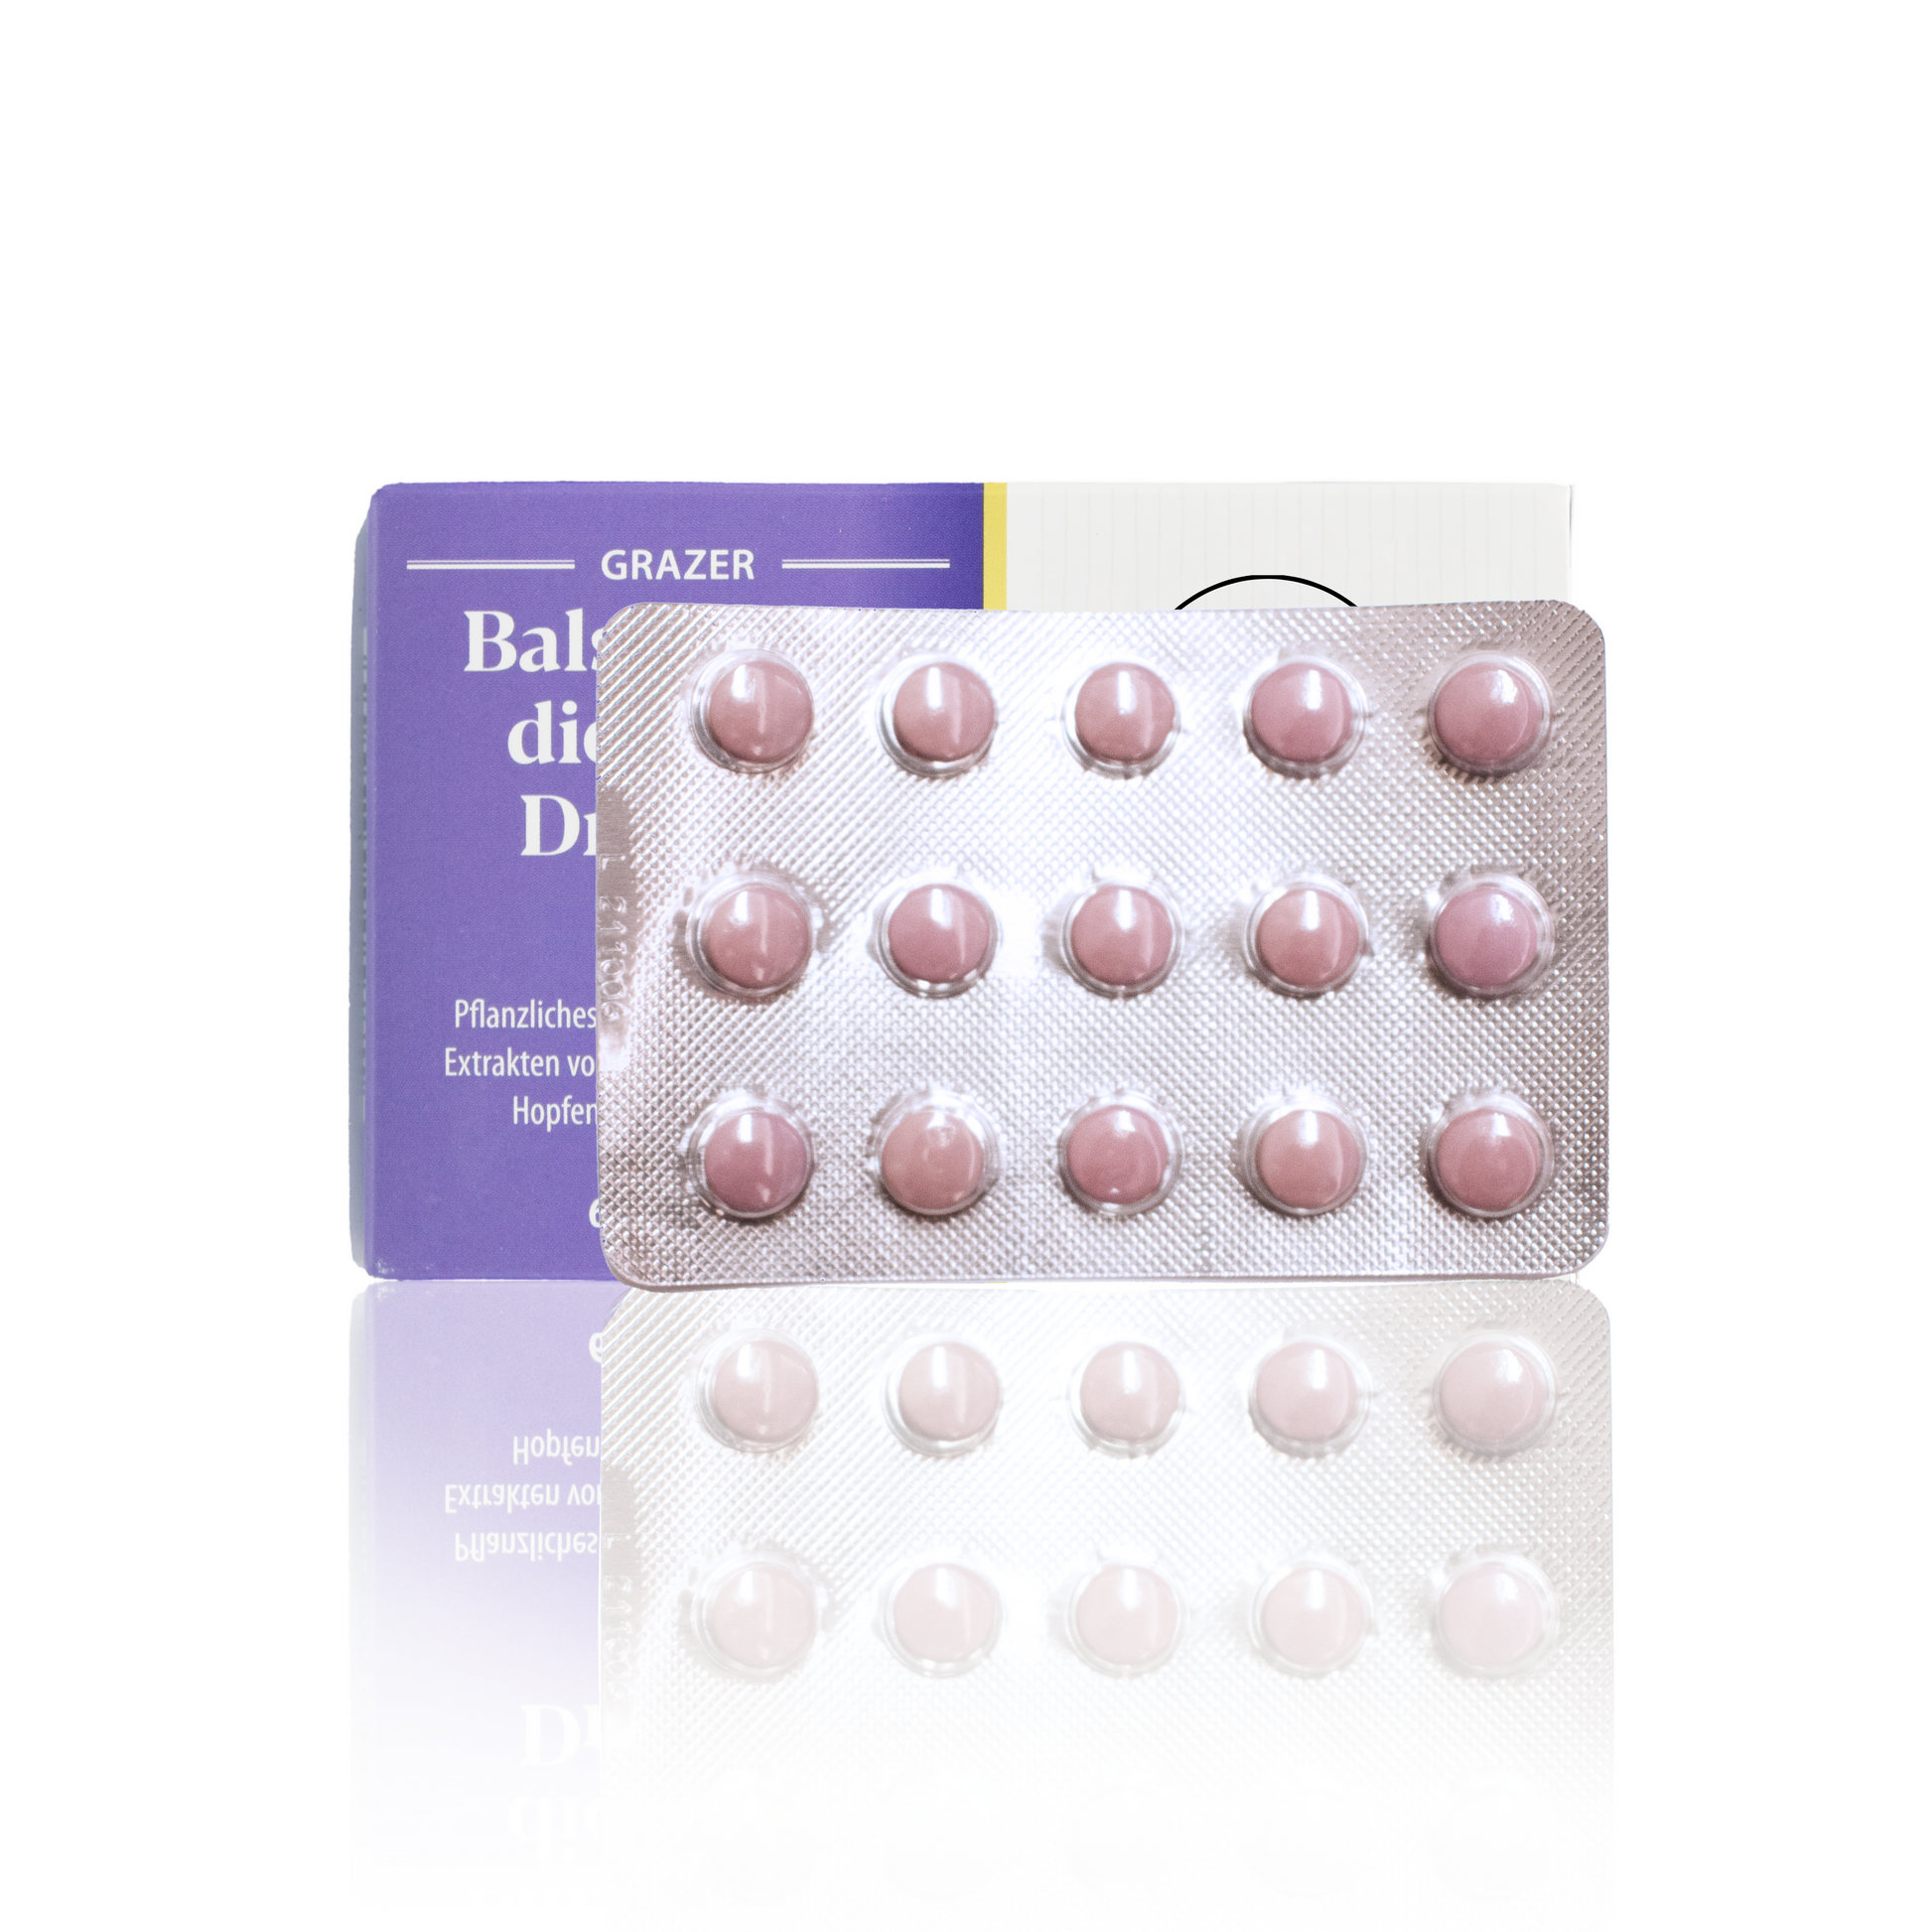 Weiß, lila Papierverpackung mit Logo und Beschreibung und im Vordergrund die rosa Tabletten gegen Seelenkummer.